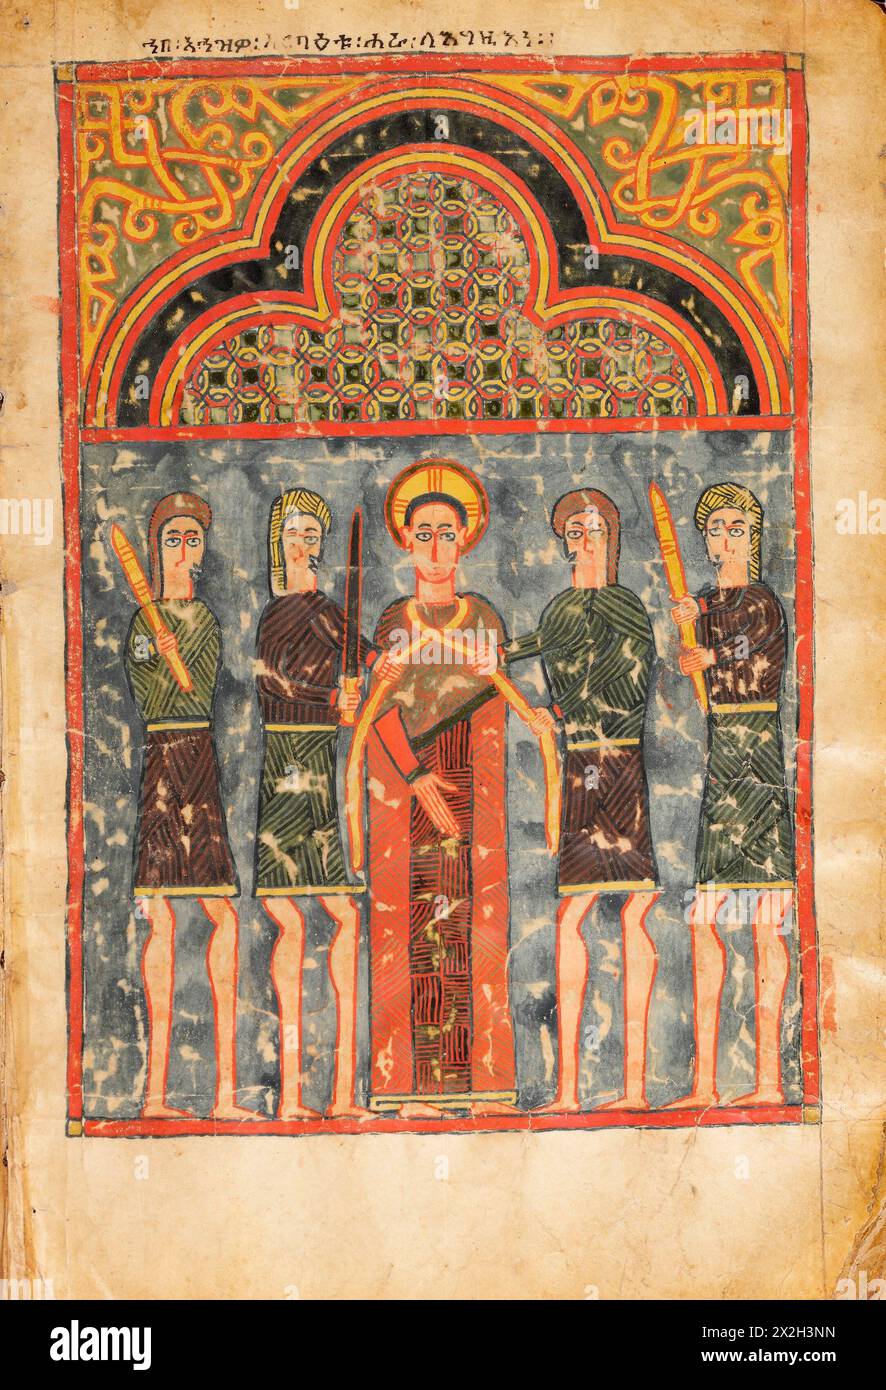 Evangile illuminé - peuples Amhara -L'arrestation de Crist- fin du XIVe au début du XVe siècle Banque D'Images